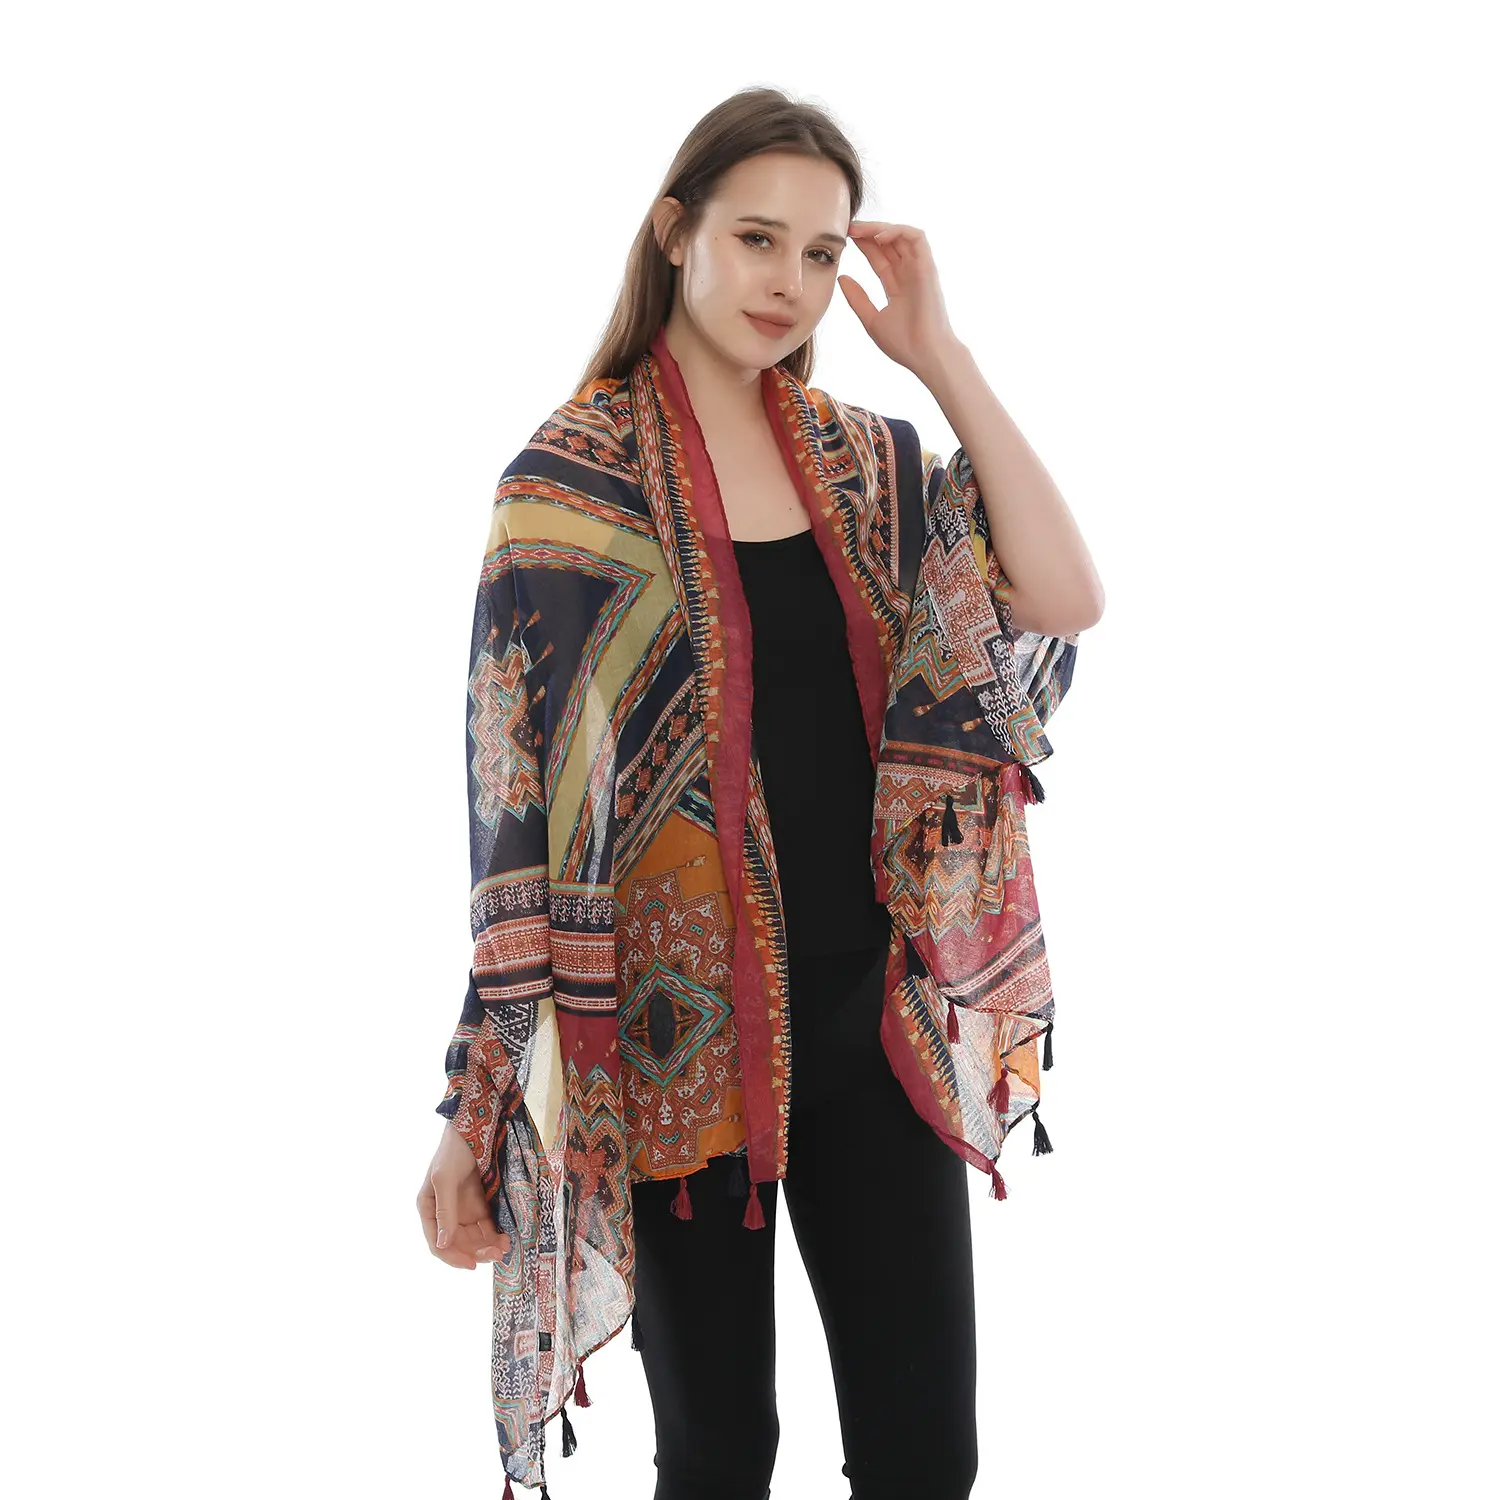 Mode Frauen Tribal Aztec Print Quaste Schals und Schals Pfeil Print Wickels chal Hijab Geometrie Voile Schal